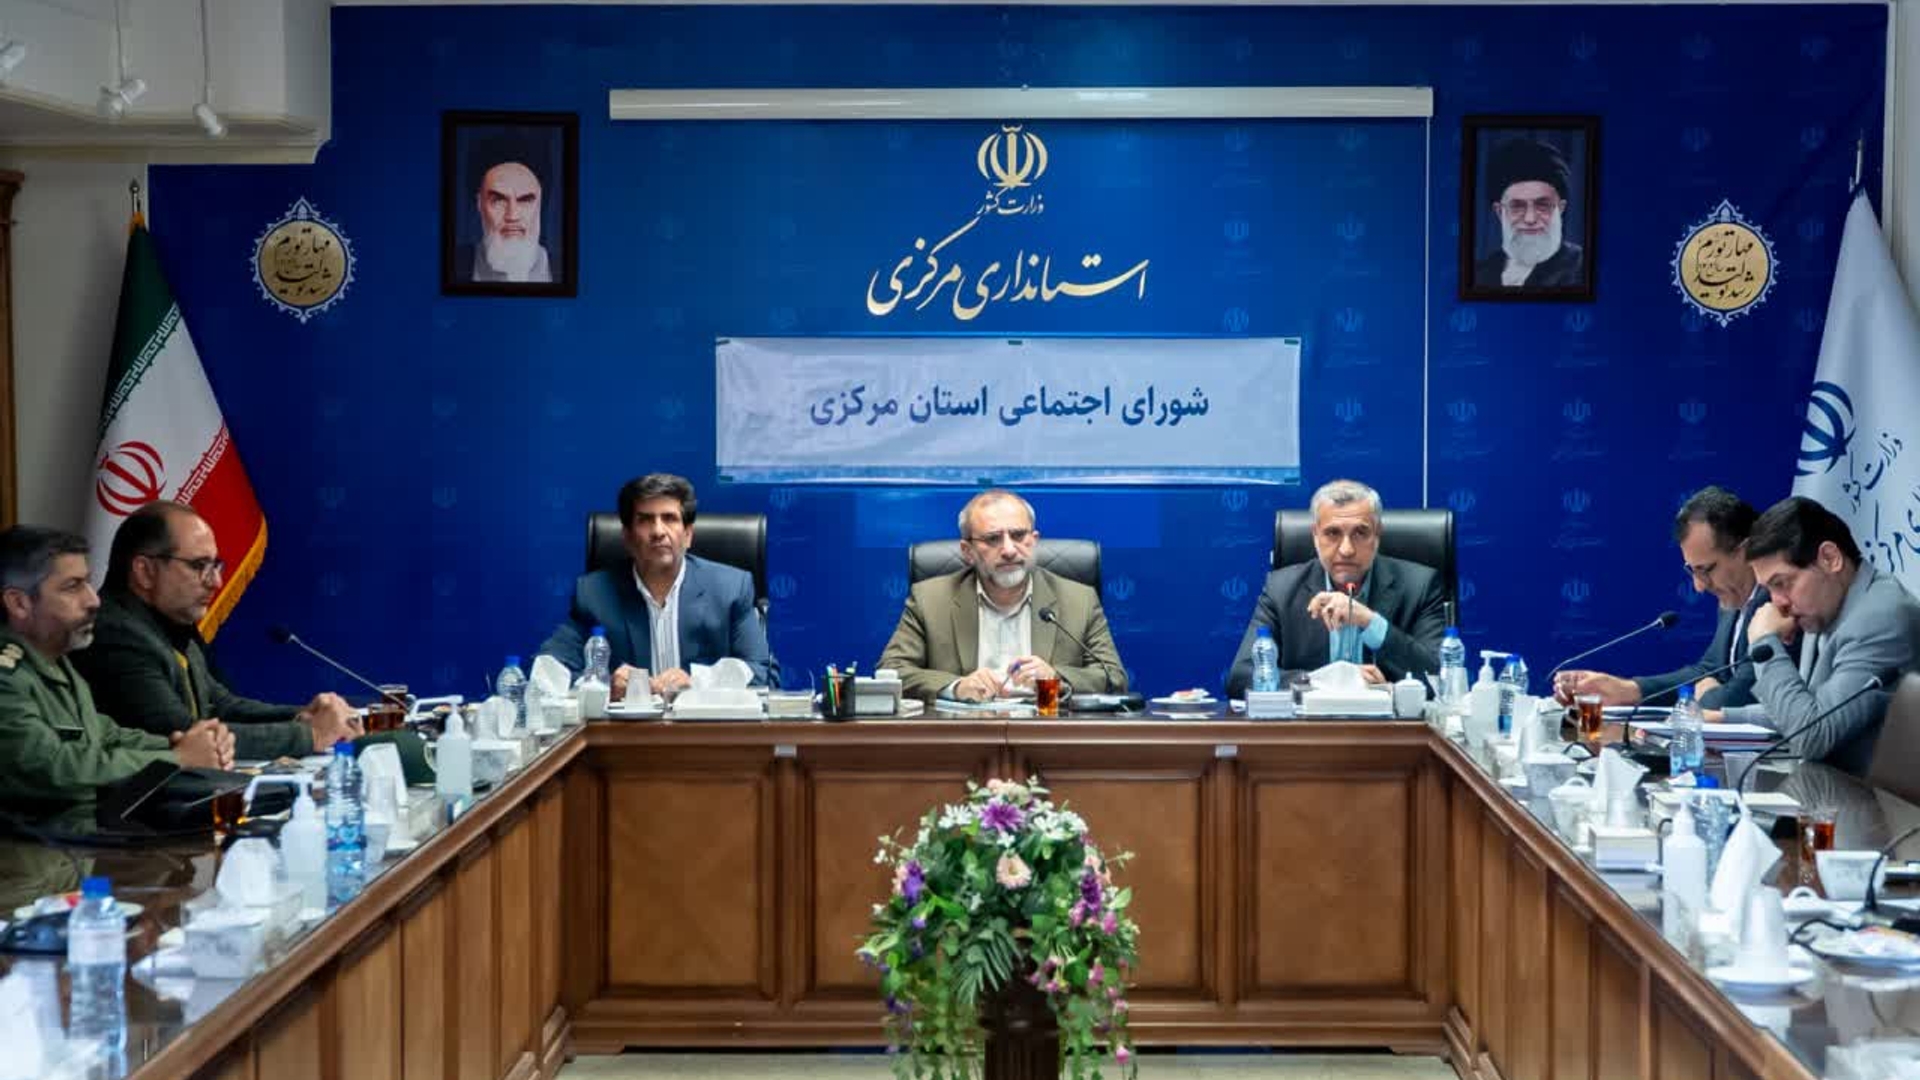 چهرمین جلسه شورای اجتماعی استان  برگزار شد.